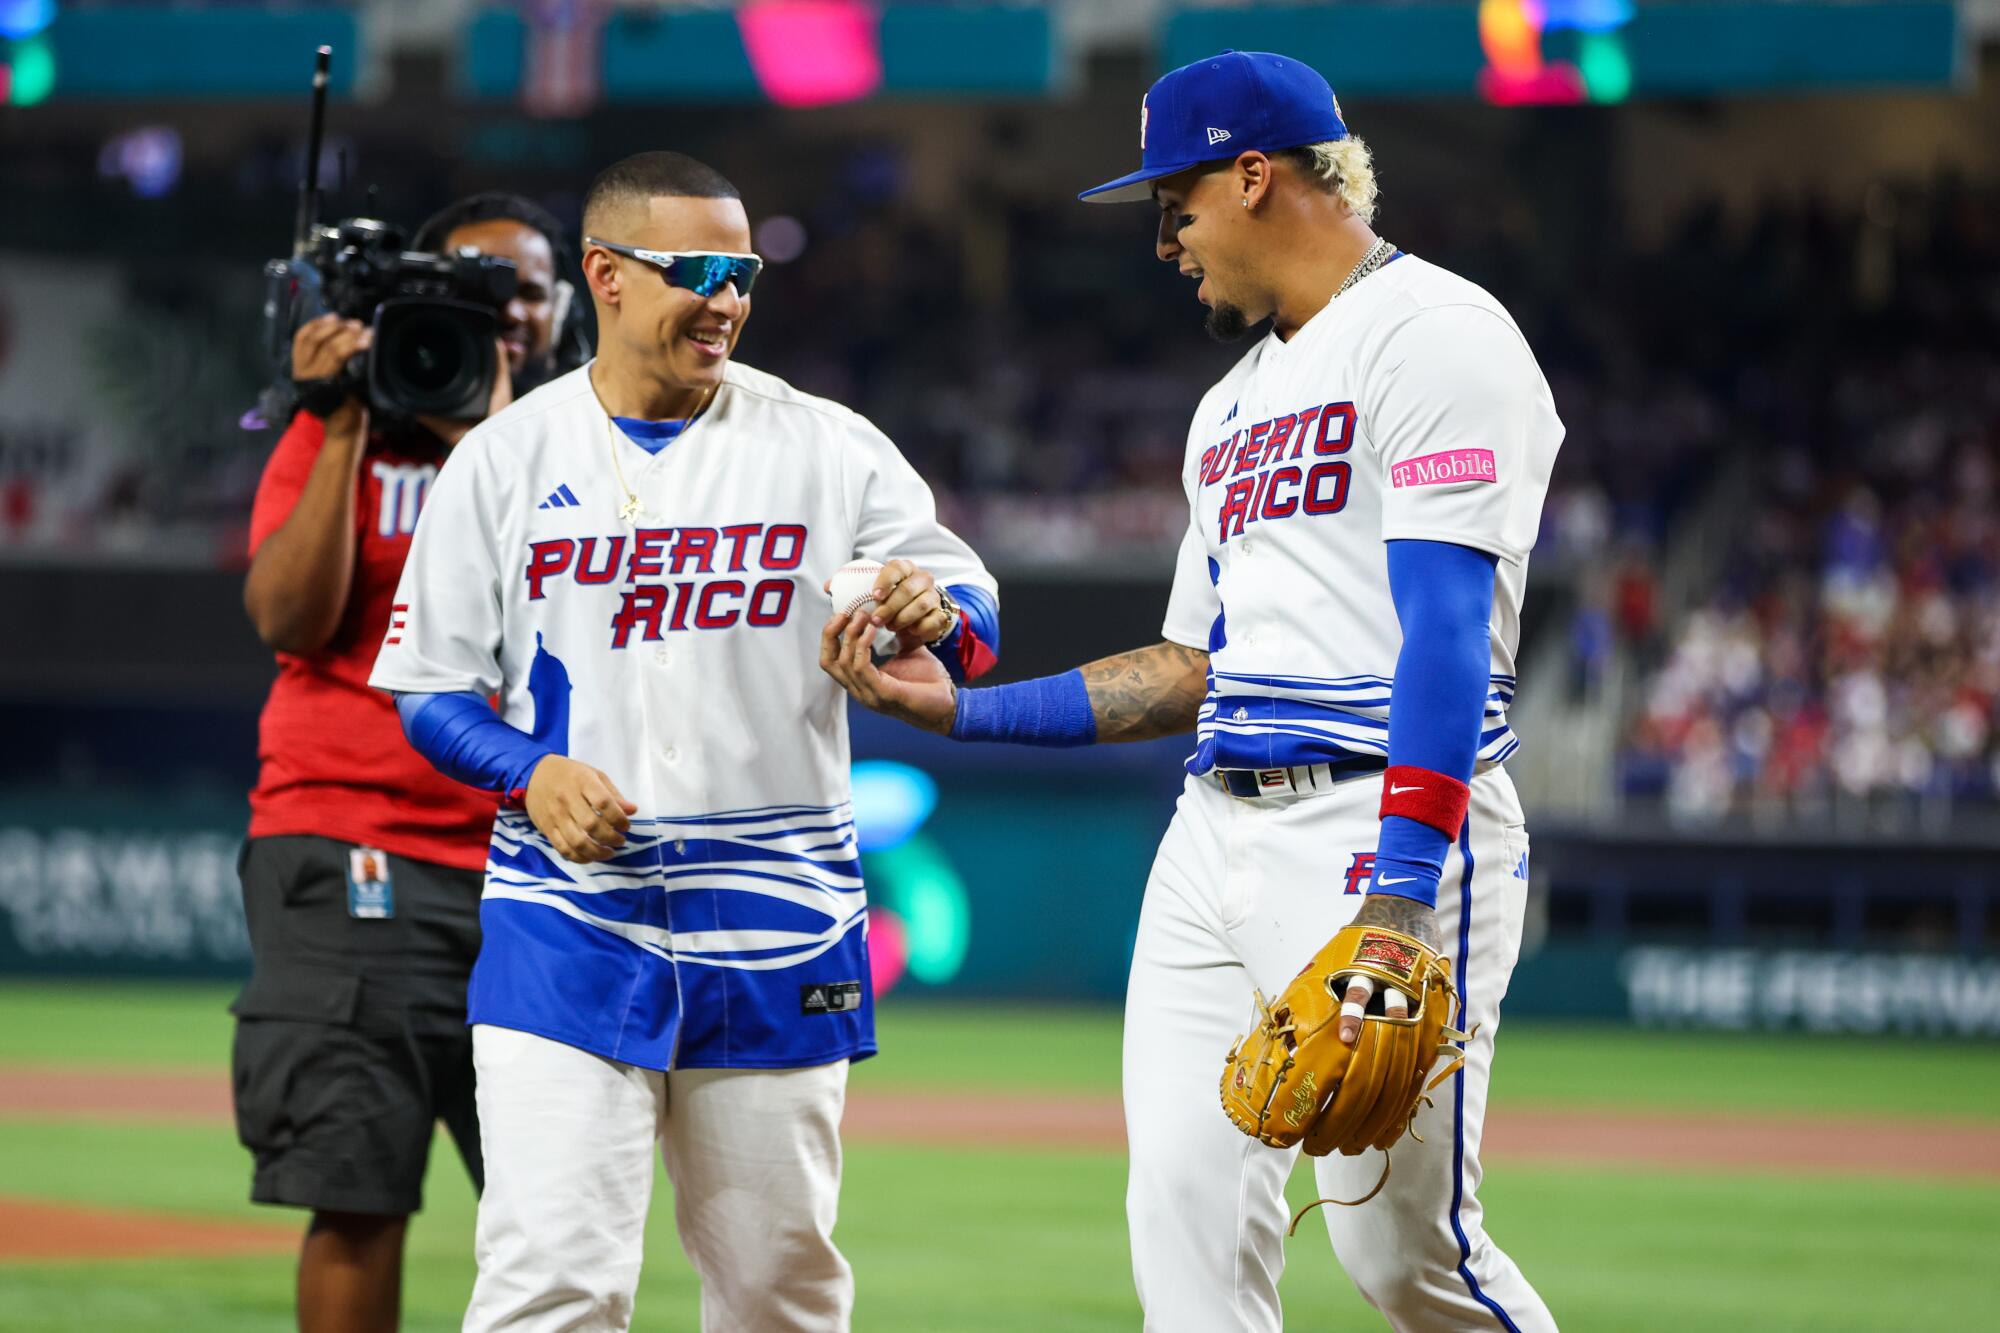 Ednel Javier Báez, conocido como "El Mago", comparte con Daddy Yankee en el campo de juego.